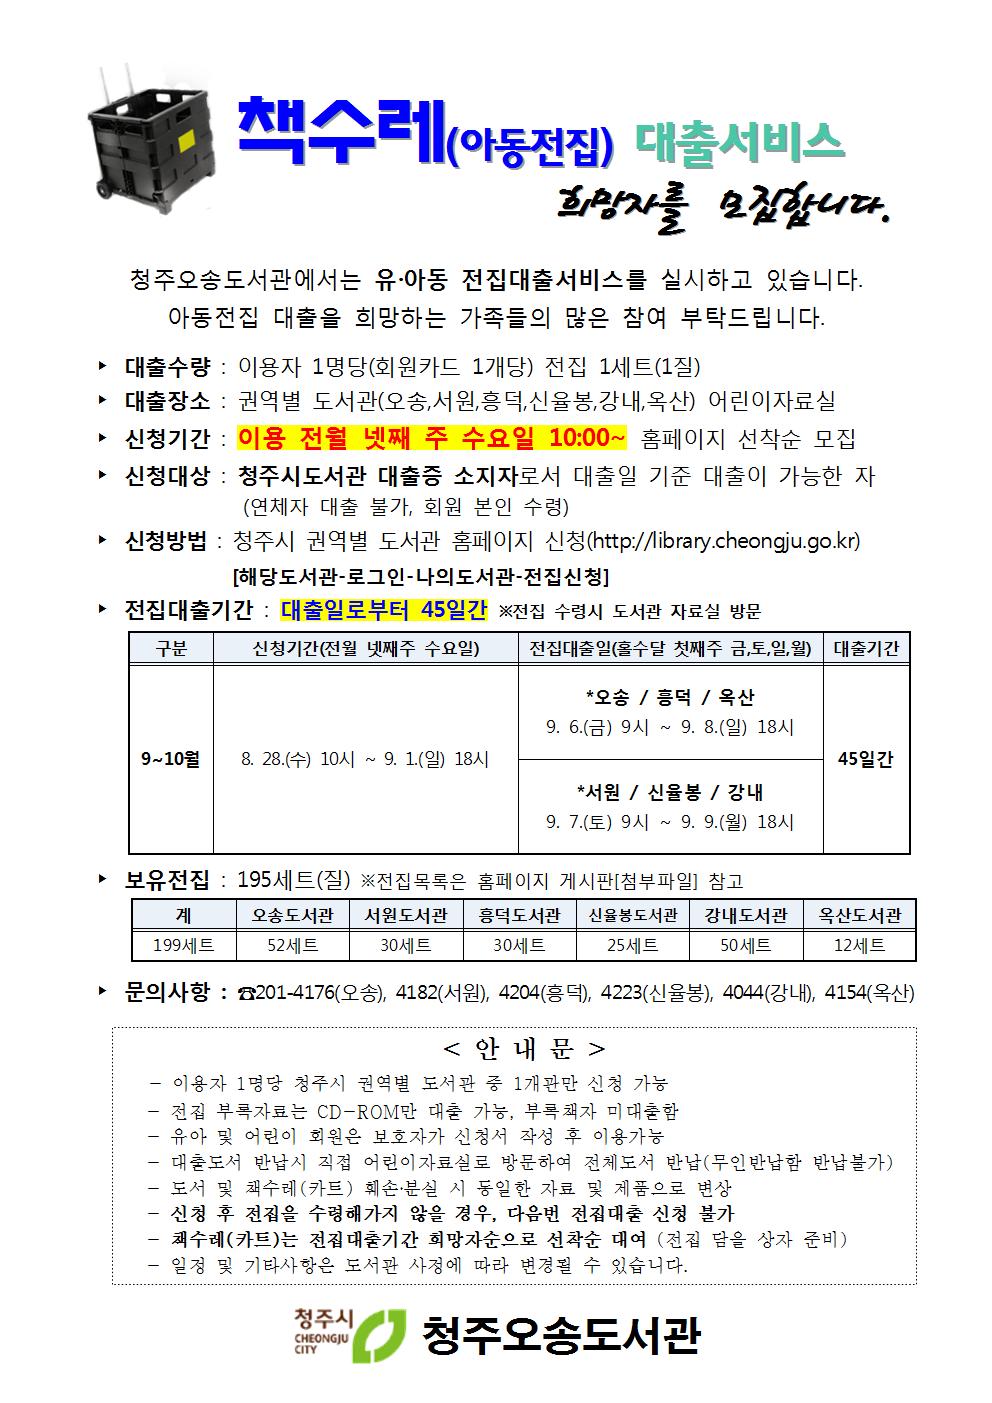 [오송·서원·흥덕·신율봉·강내·옥산도서관]2019년 9-10월 전집대출 신청자 모집